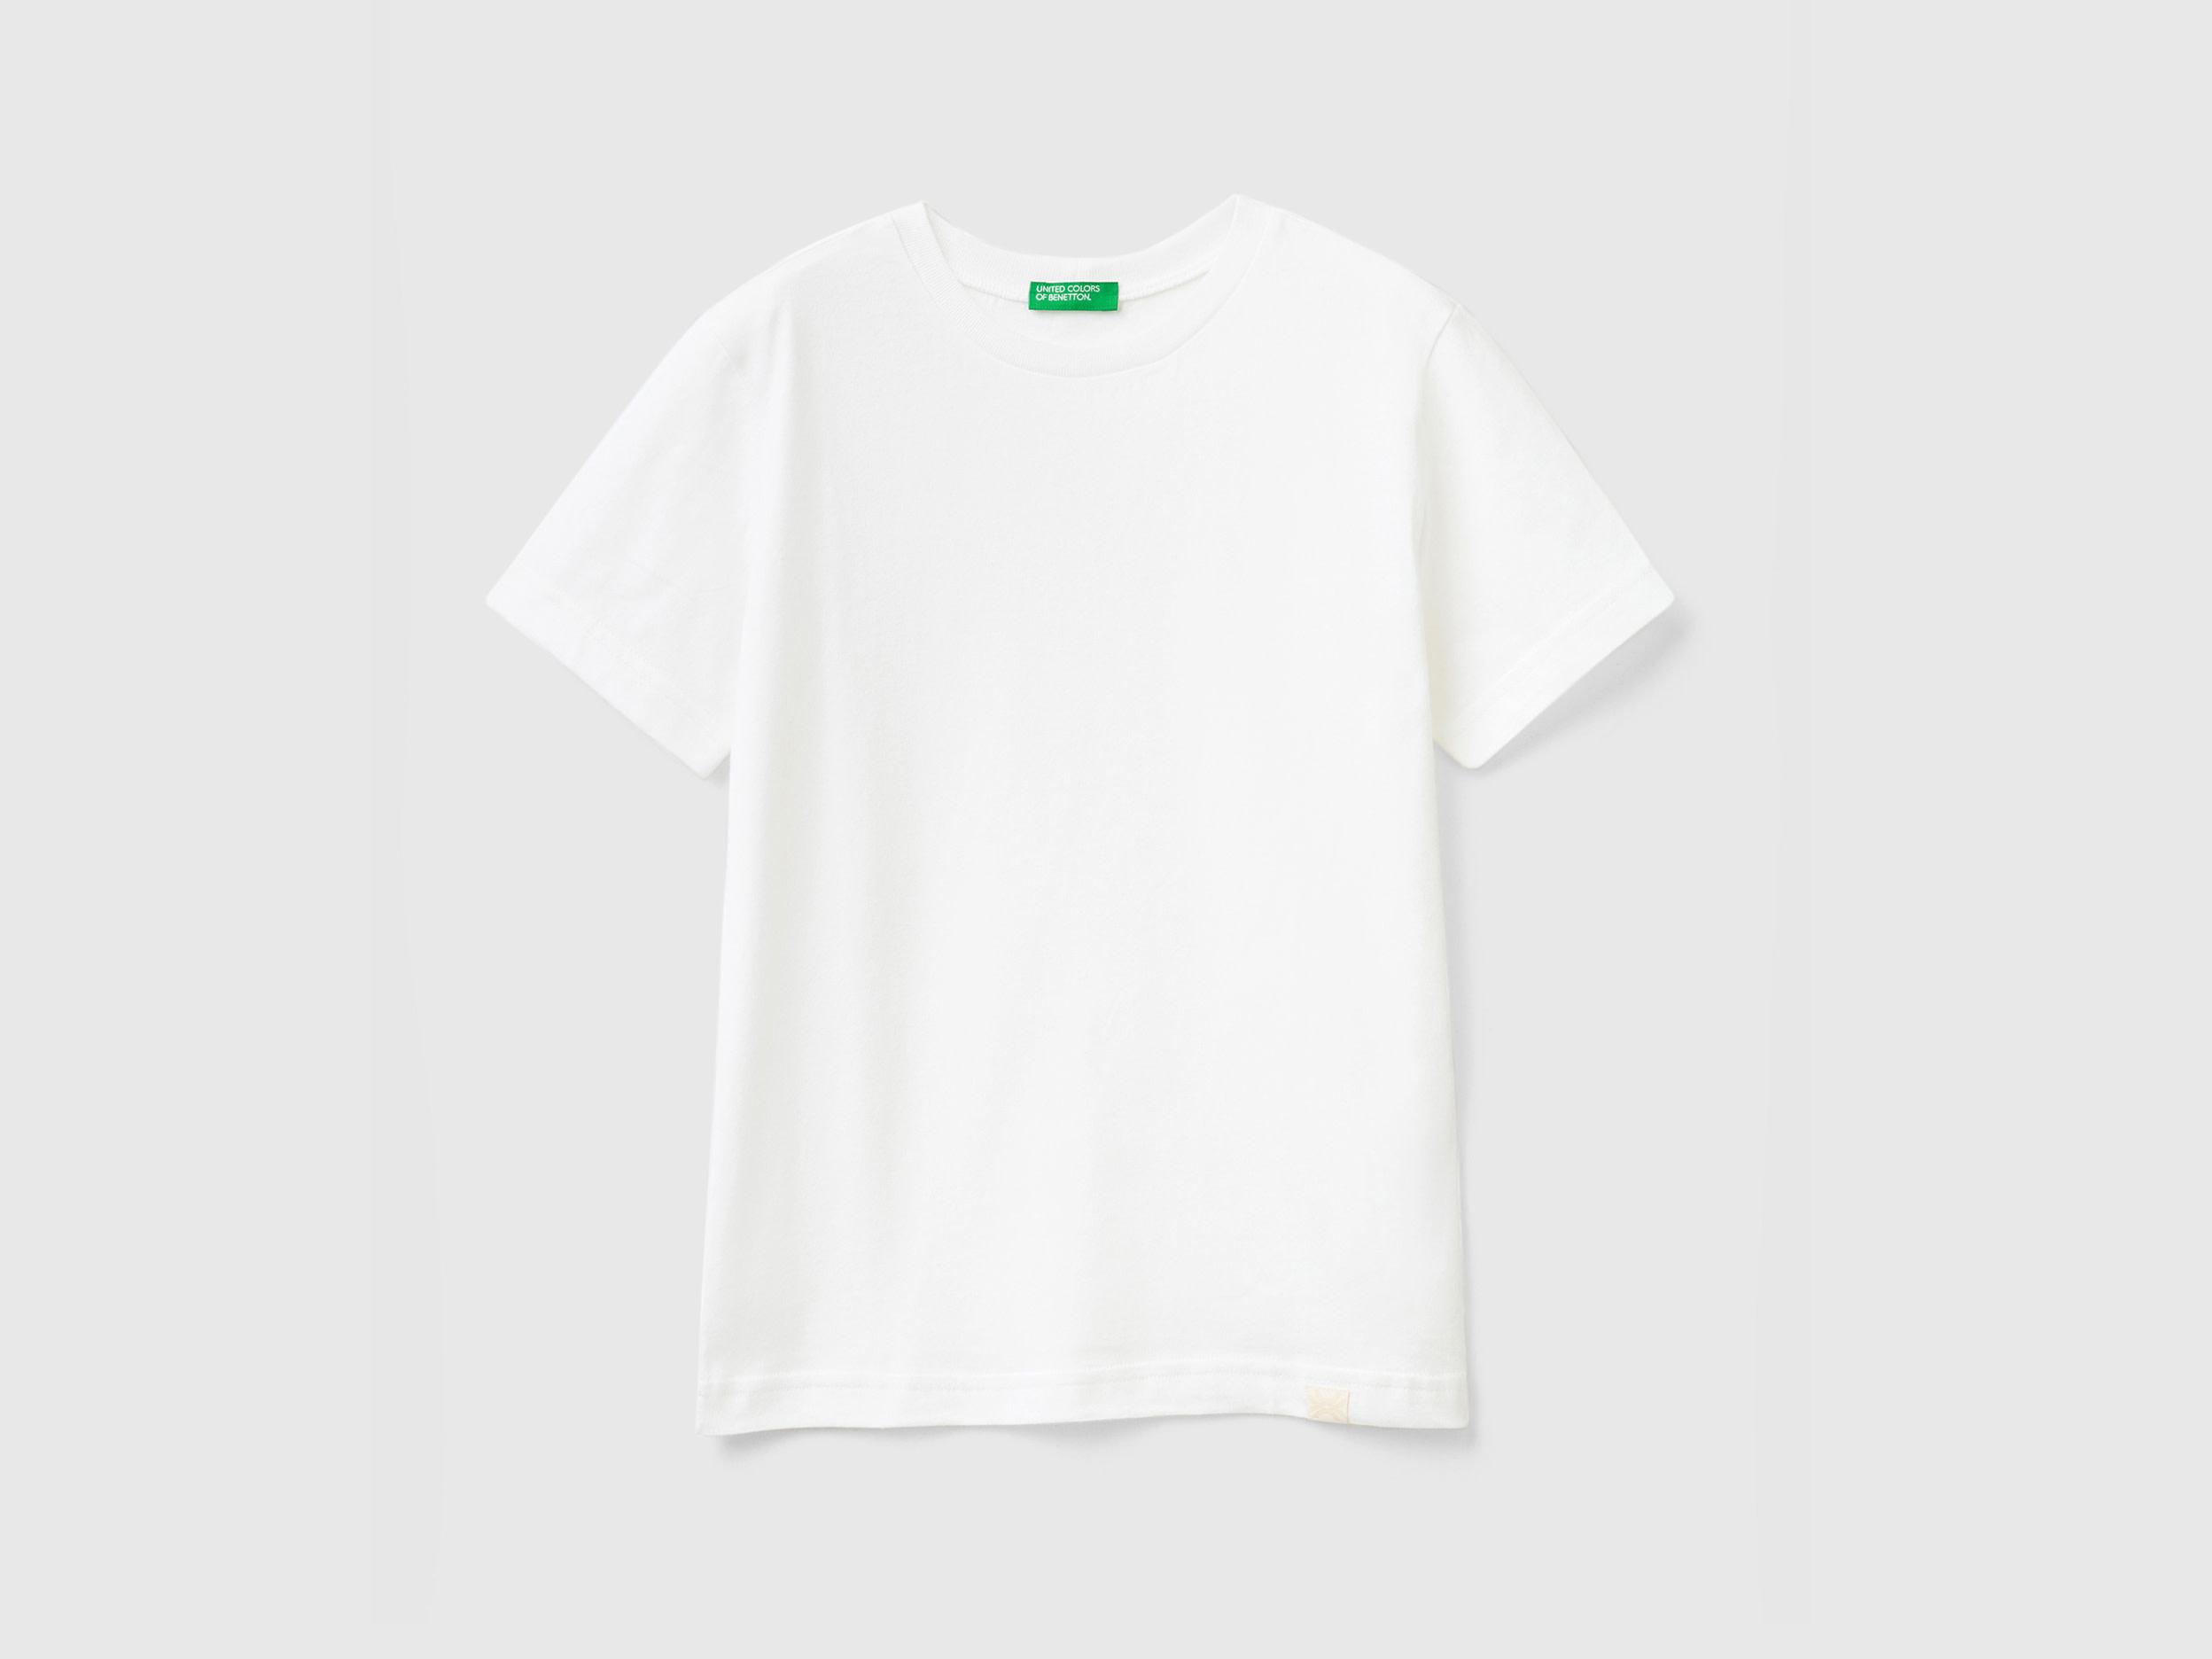 Benetton, Organic Cotton T-shirt, size 3XL, White, Kids